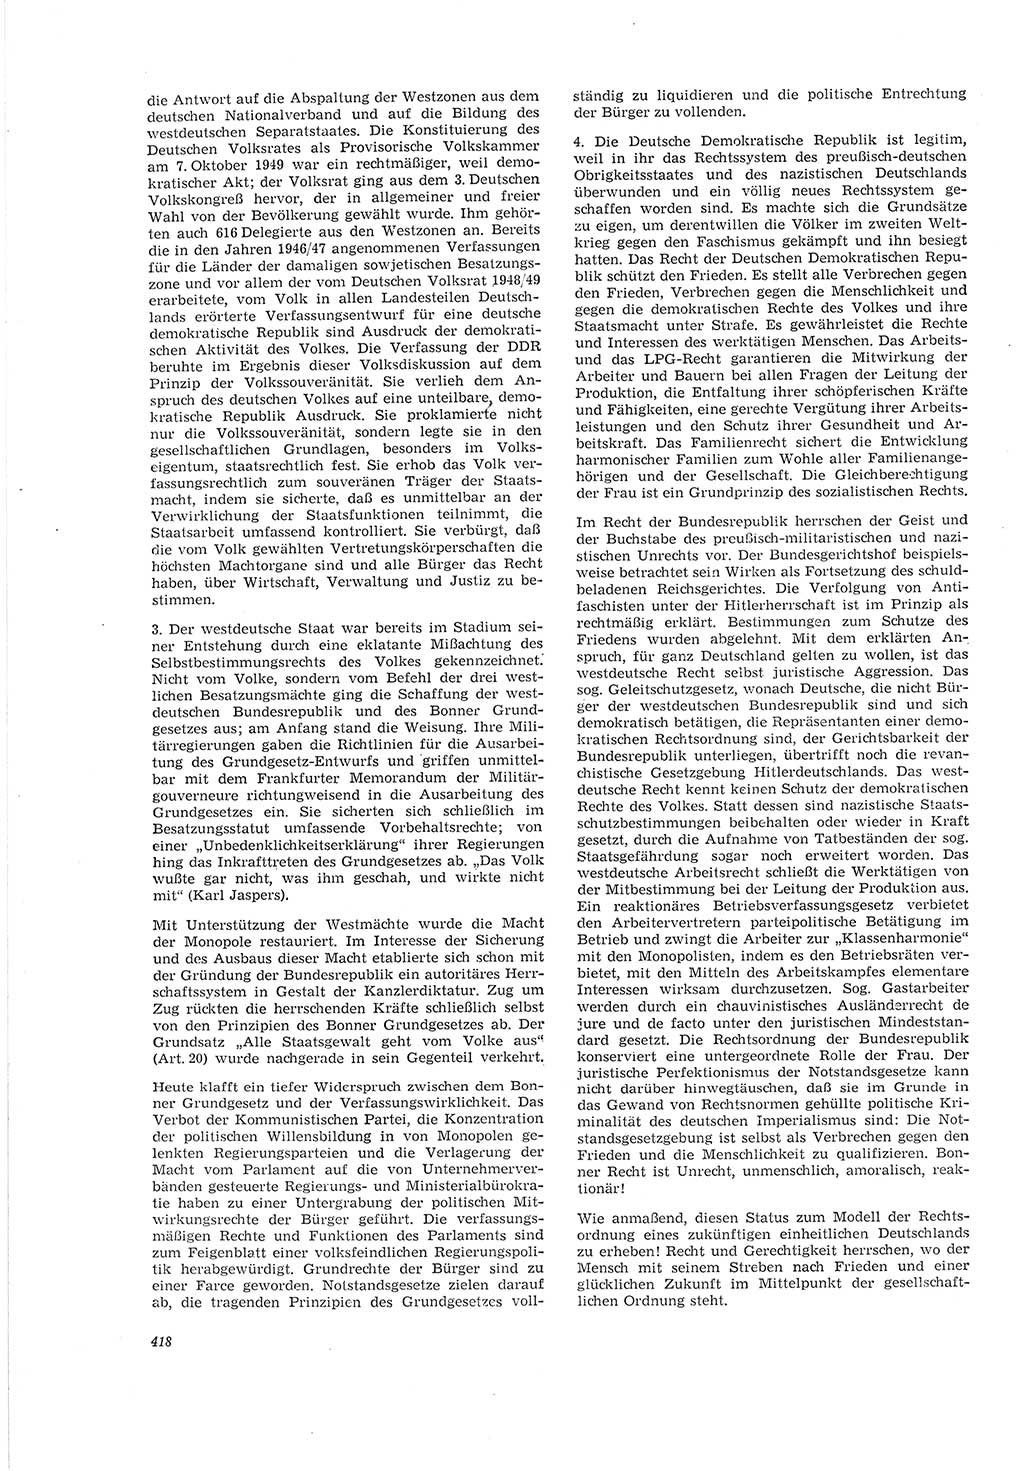 Neue Justiz (NJ), Zeitschrift für Recht und Rechtswissenschaft [Deutsche Demokratische Republik (DDR)], 20. Jahrgang 1966, Seite 418 (NJ DDR 1966, S. 418)